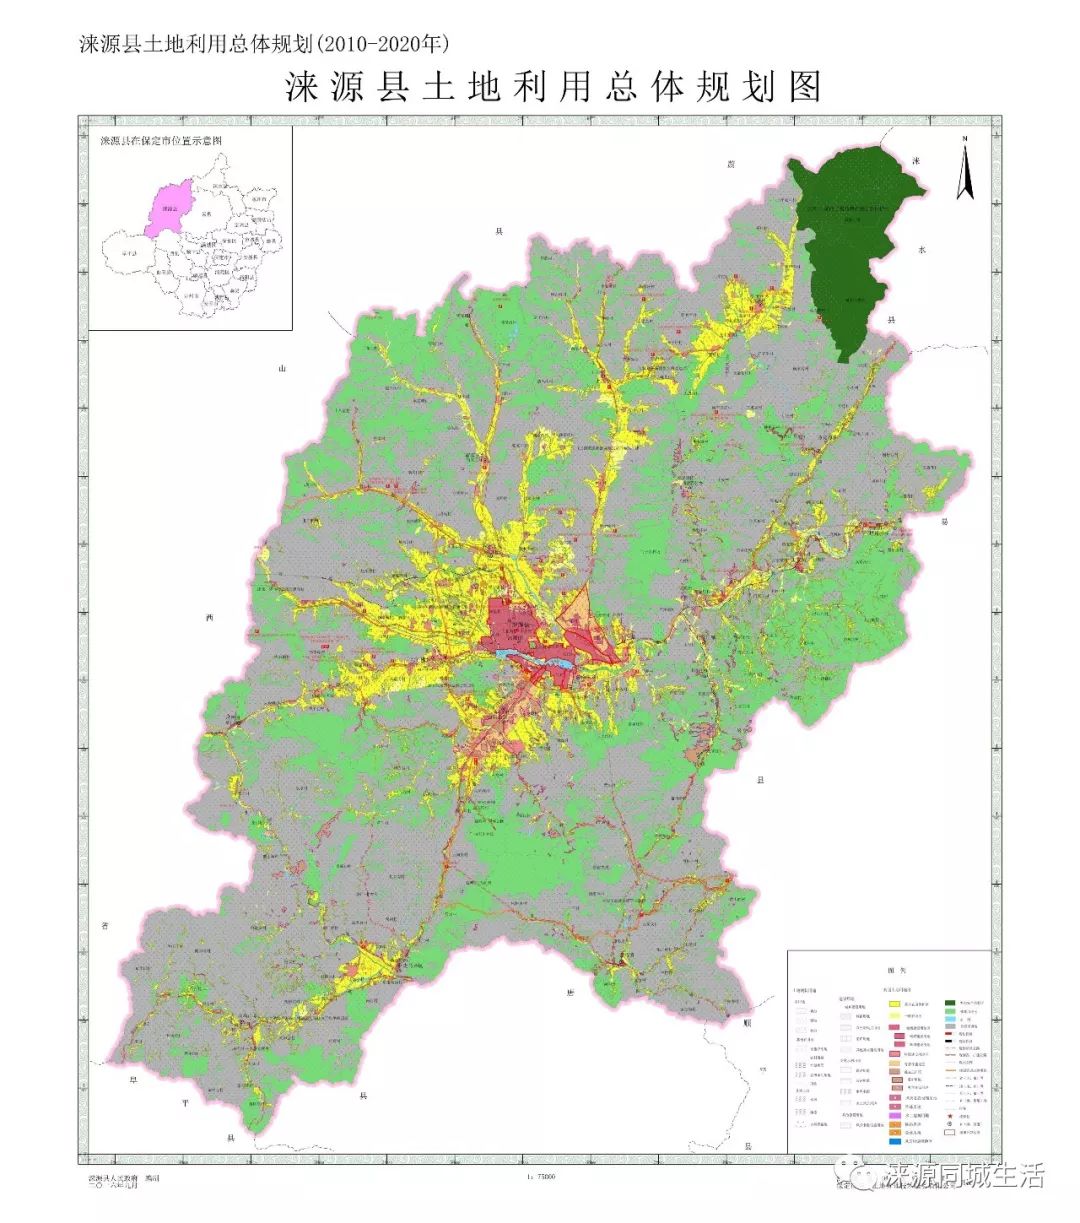 【重要公告】2010—2020年涞源土地利用总体规划